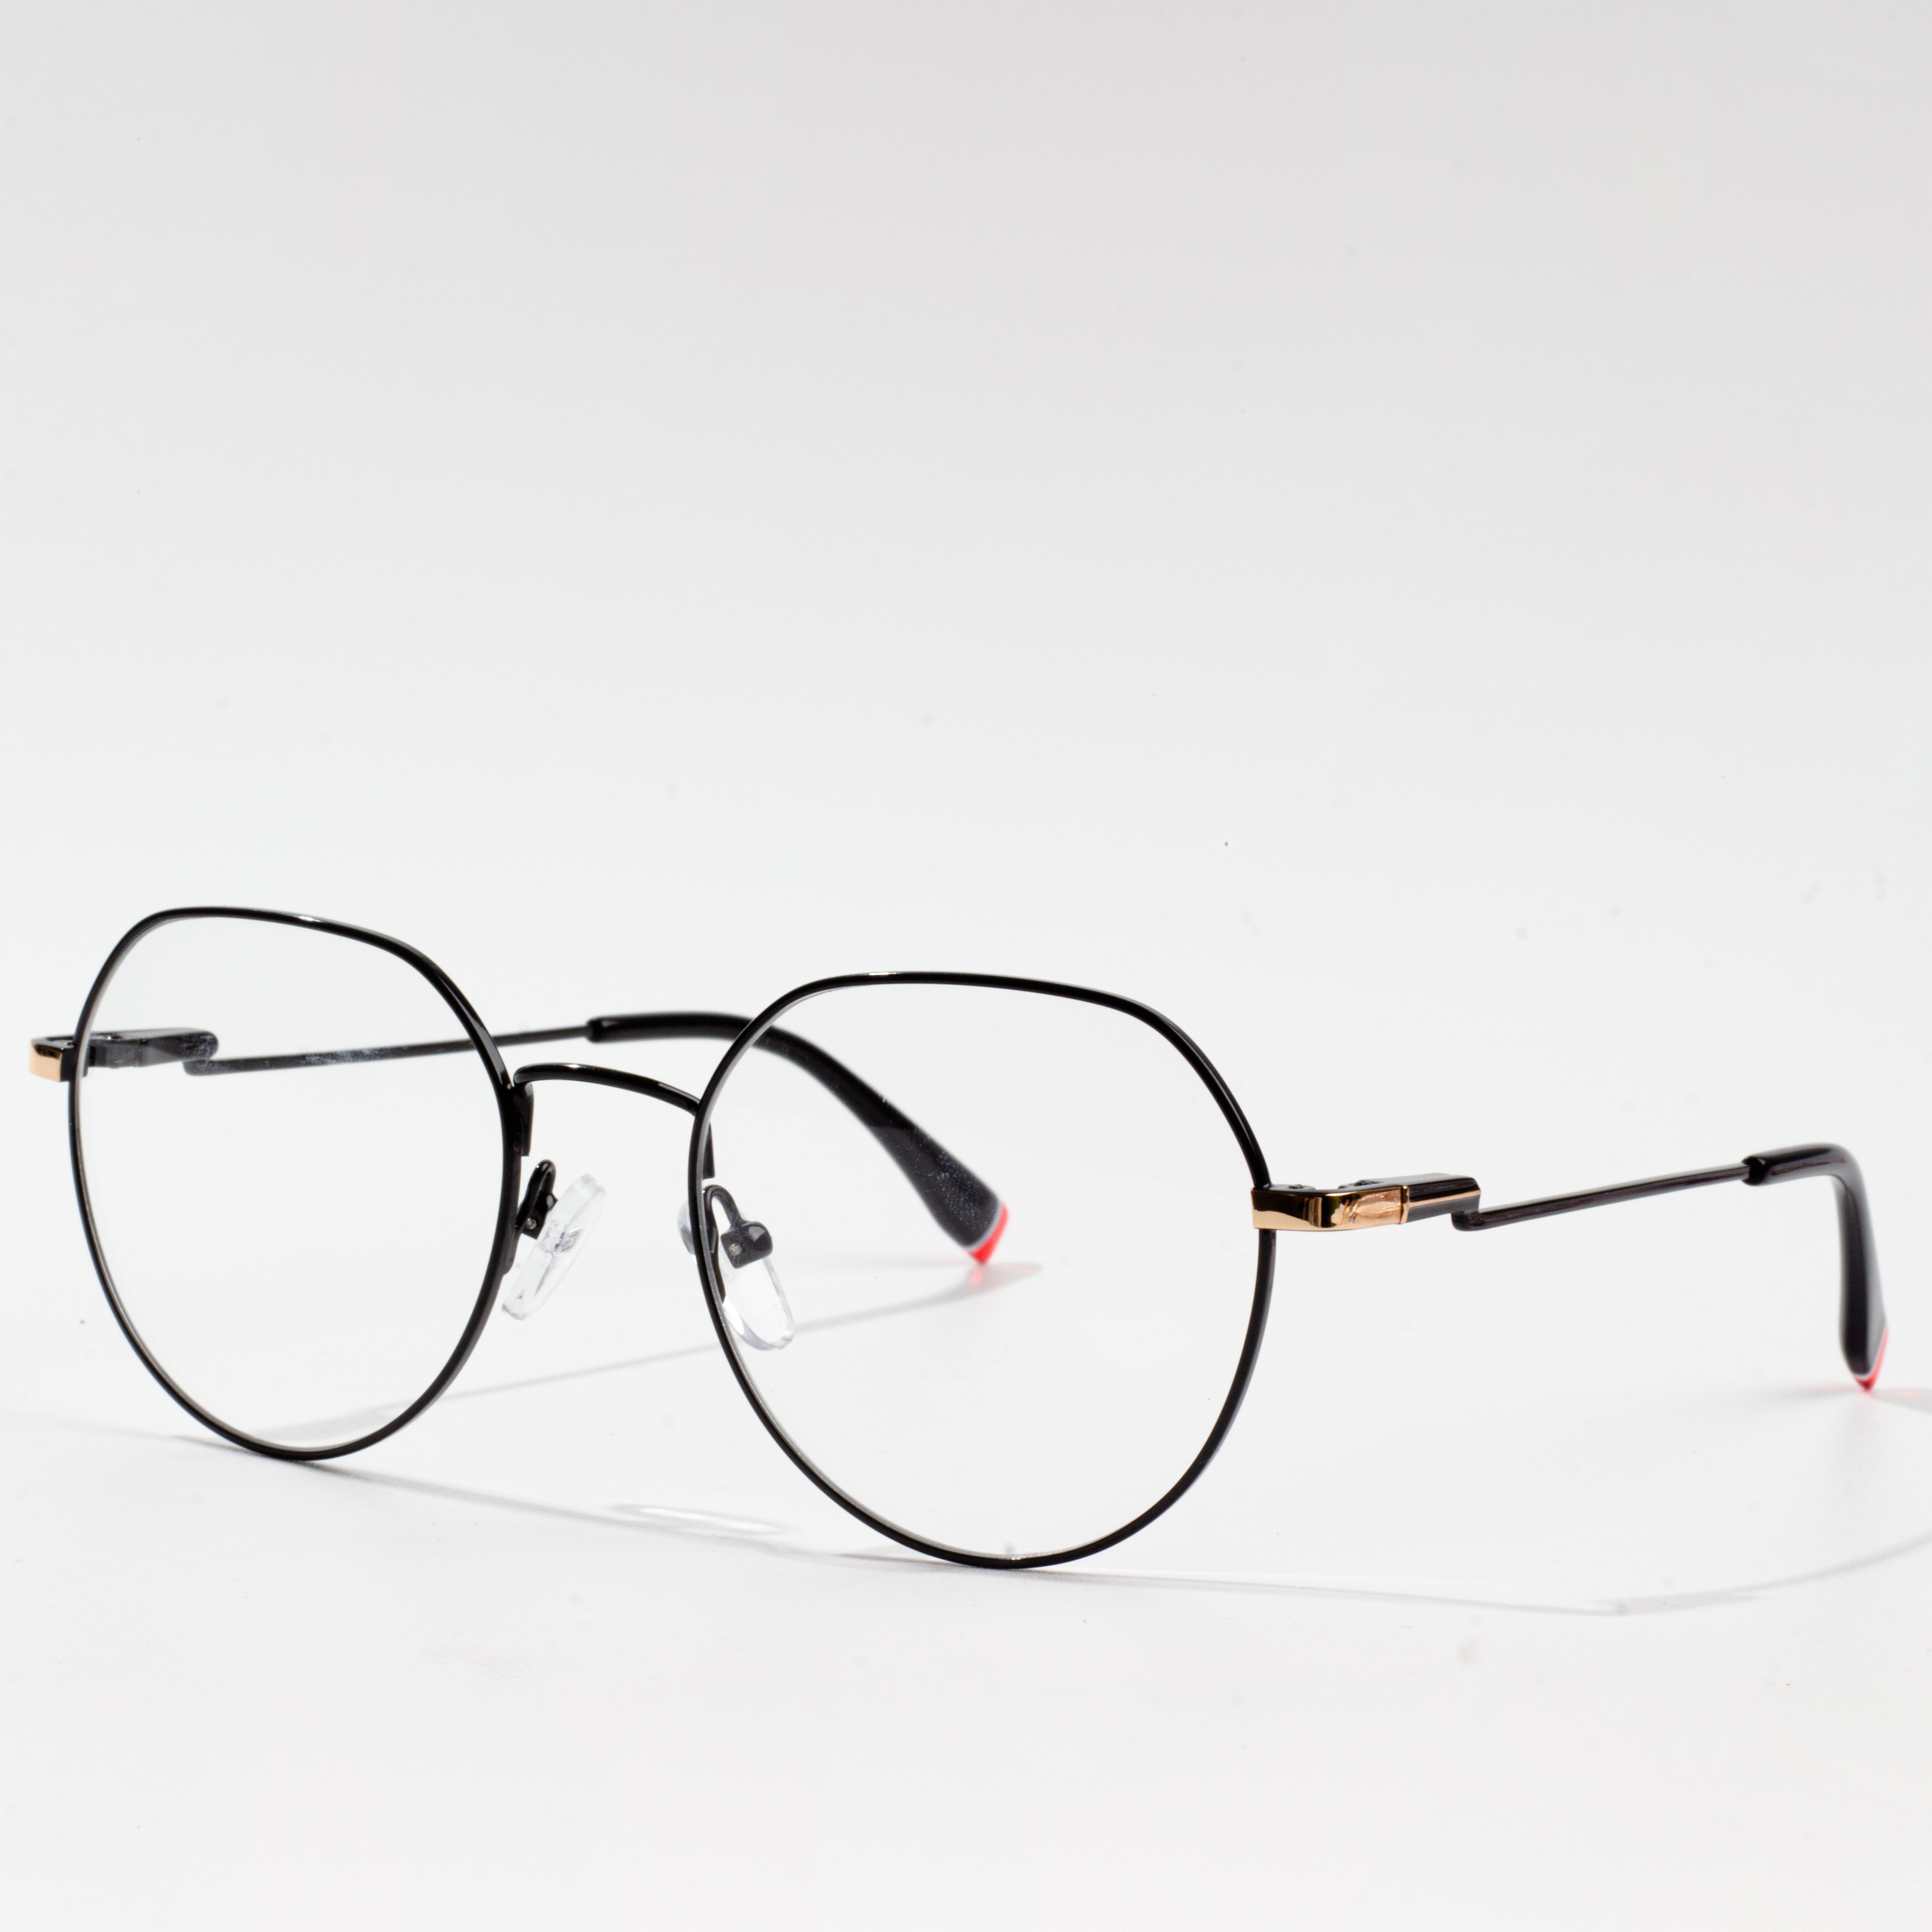 fframiau eyeglass mwyaf poblogaidd